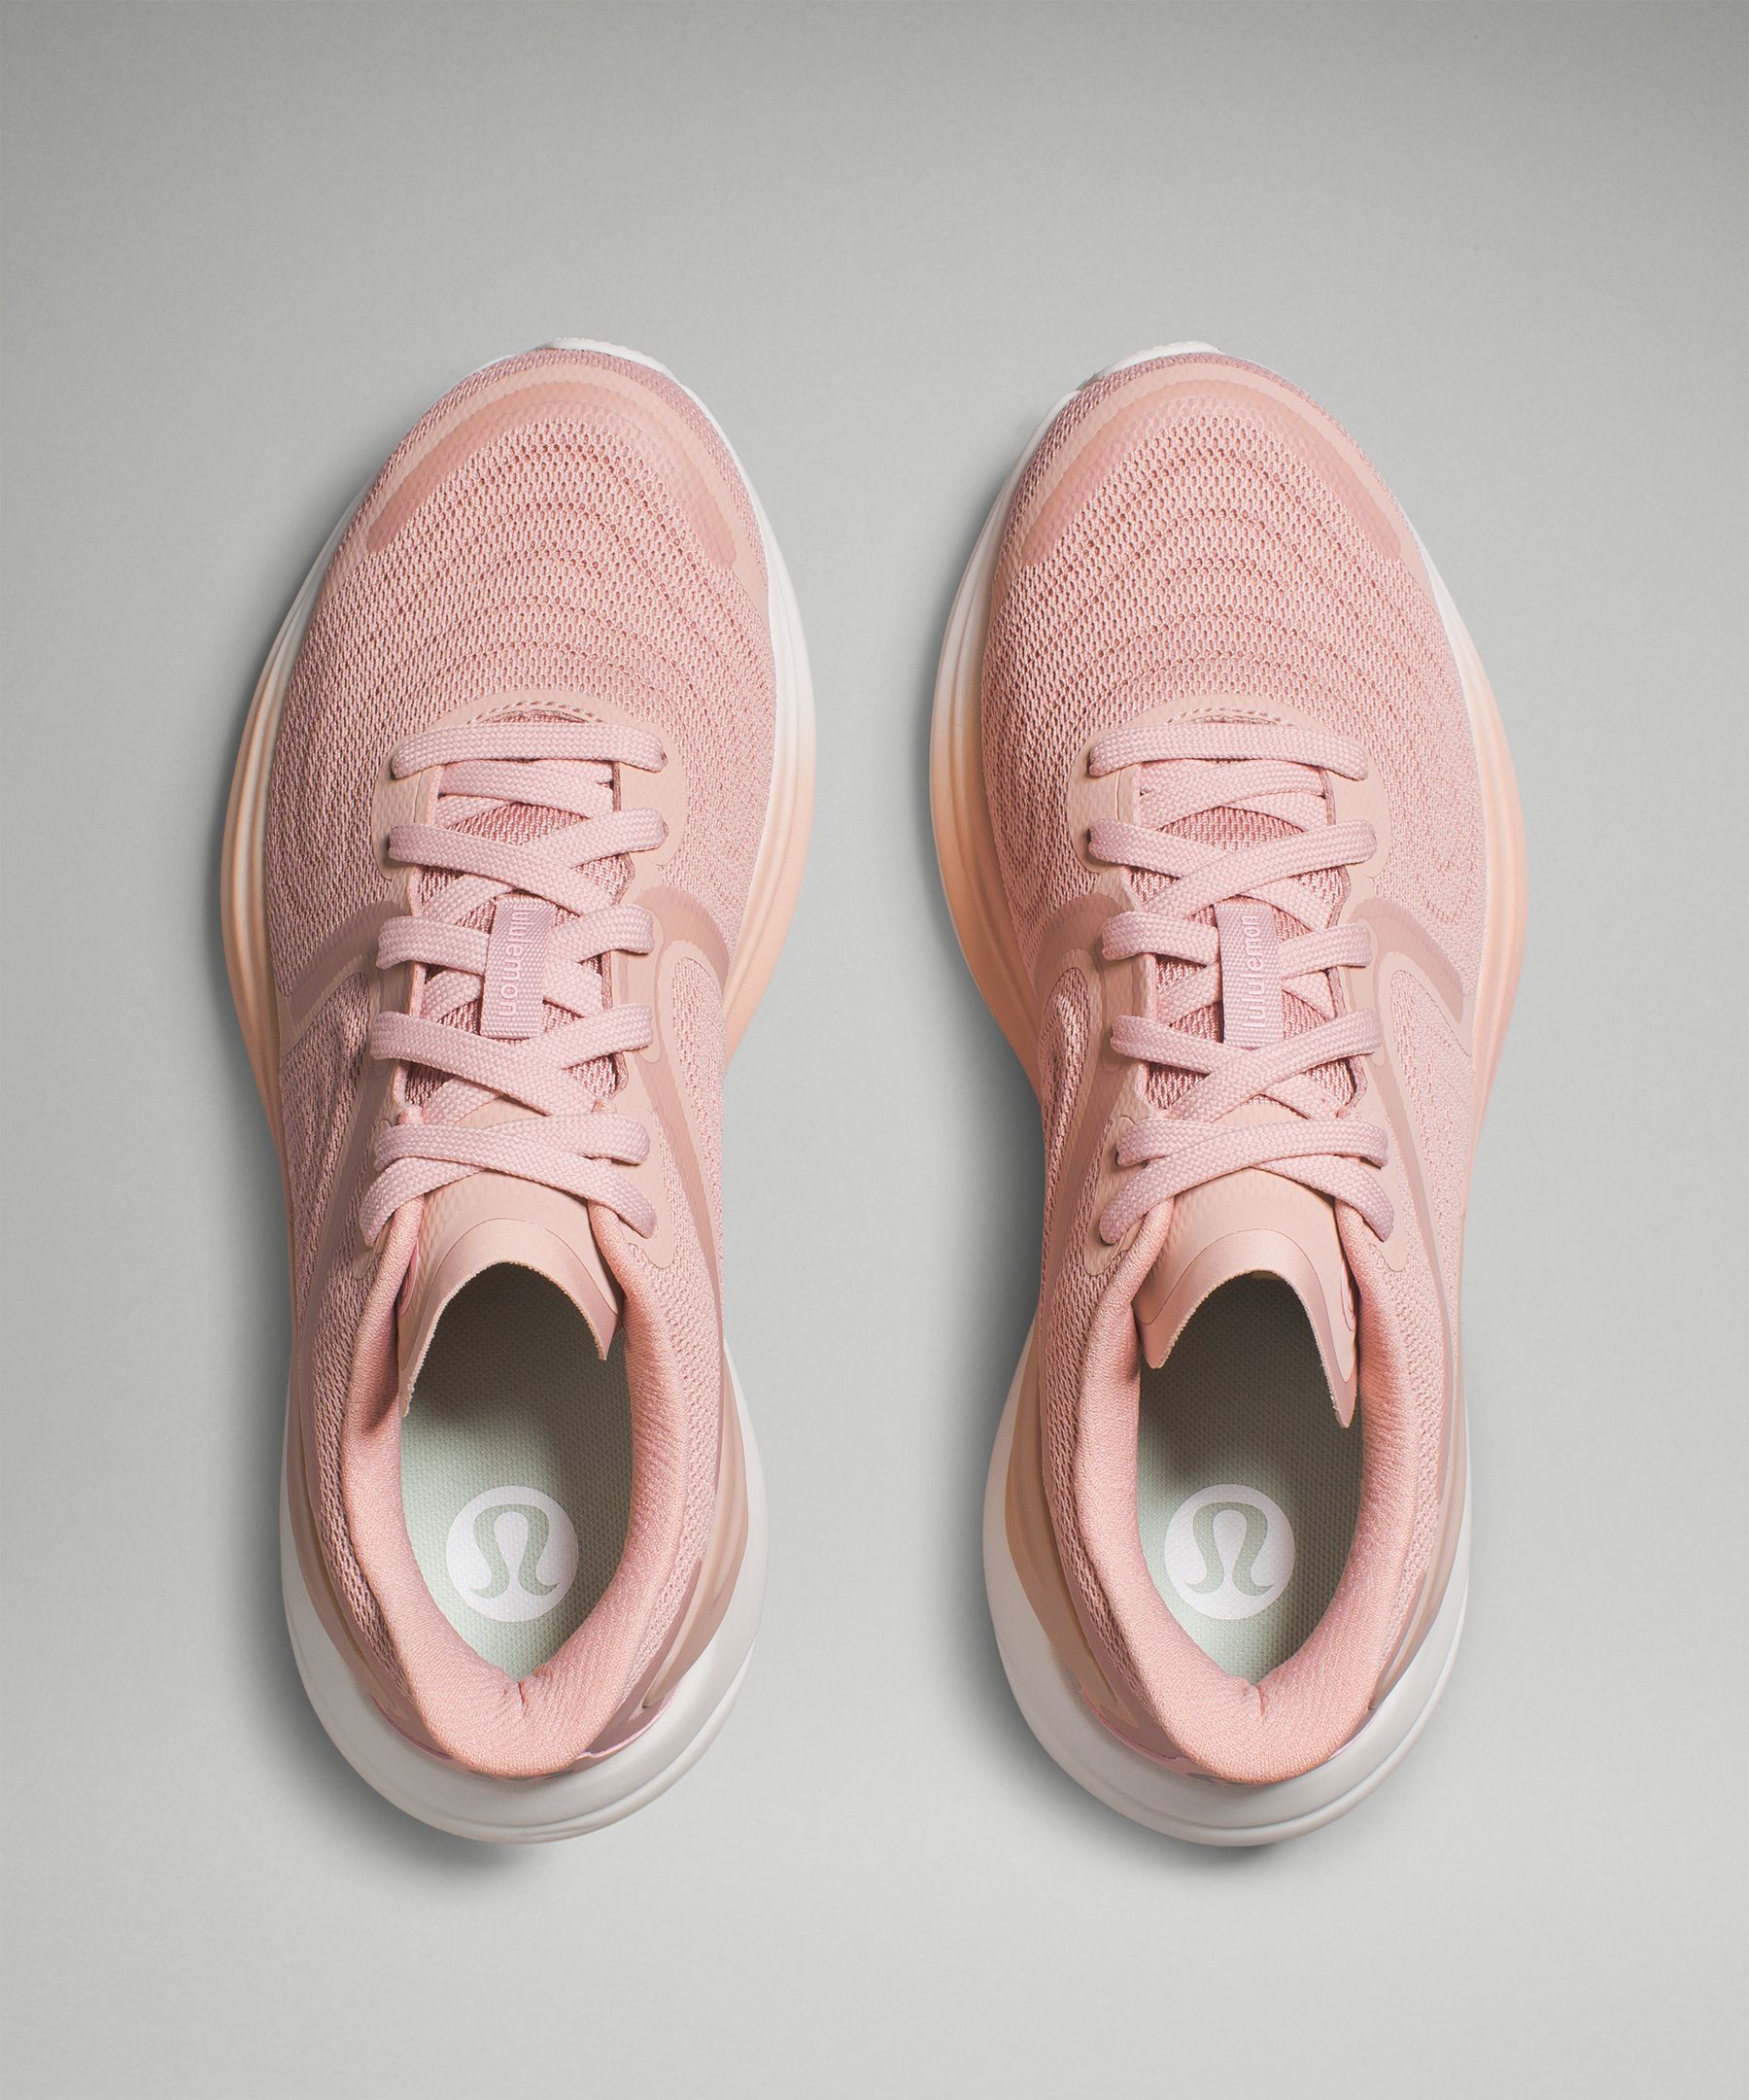 NWOB Lululemon Blissfeel Running Shoe Size 8 Pink Peony/Sunset